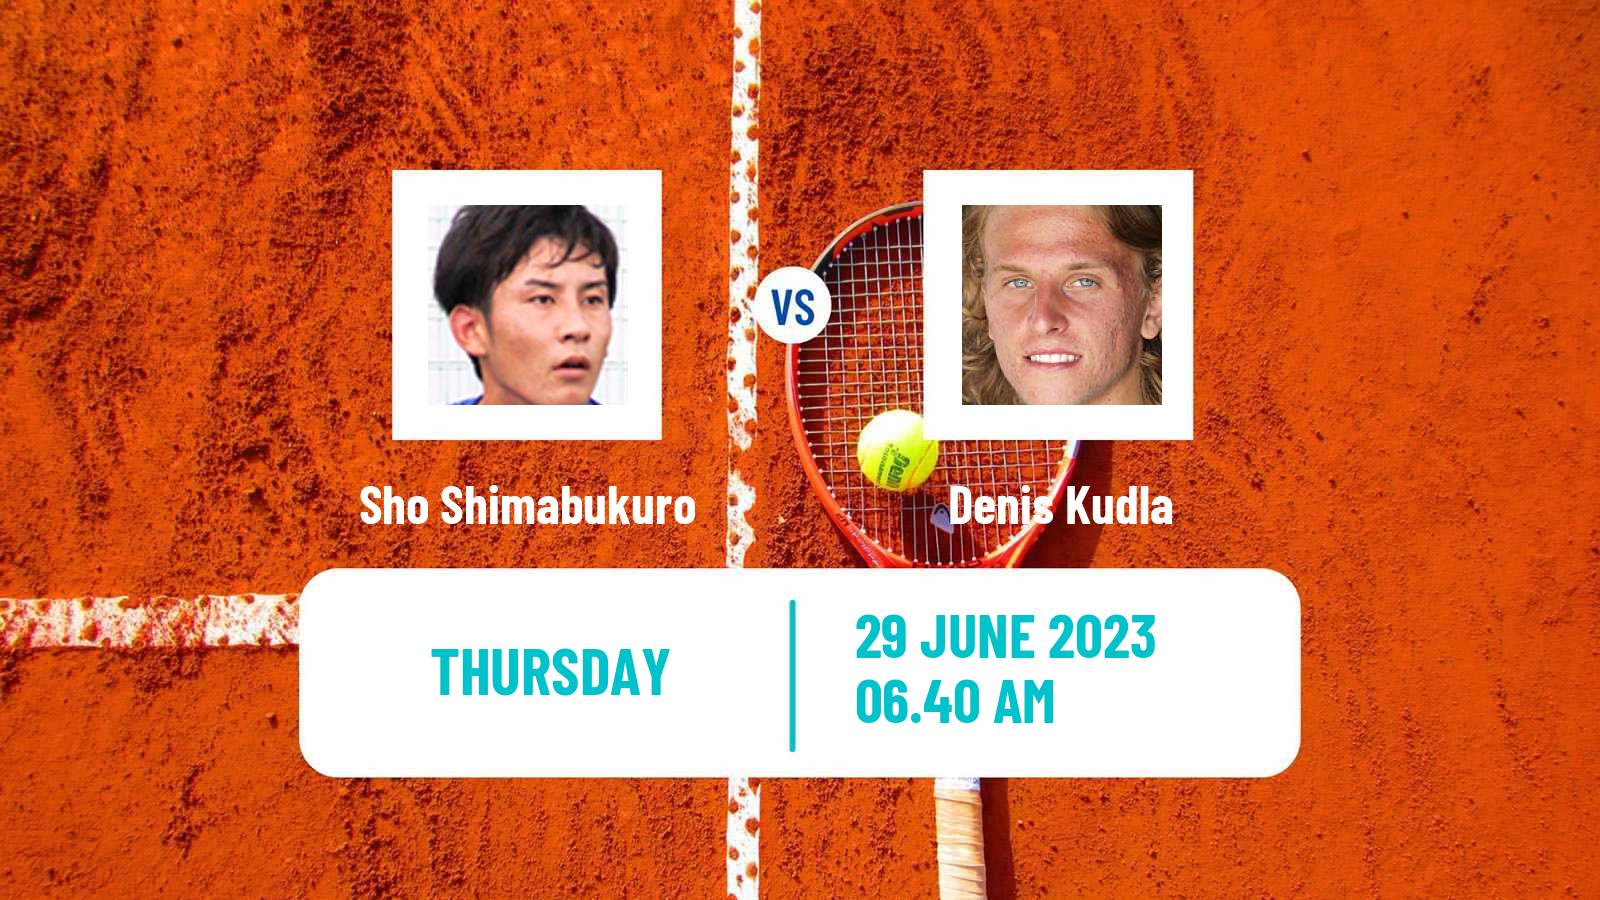 Tennis ATP Wimbledon Sho Shimabukuro - Denis Kudla